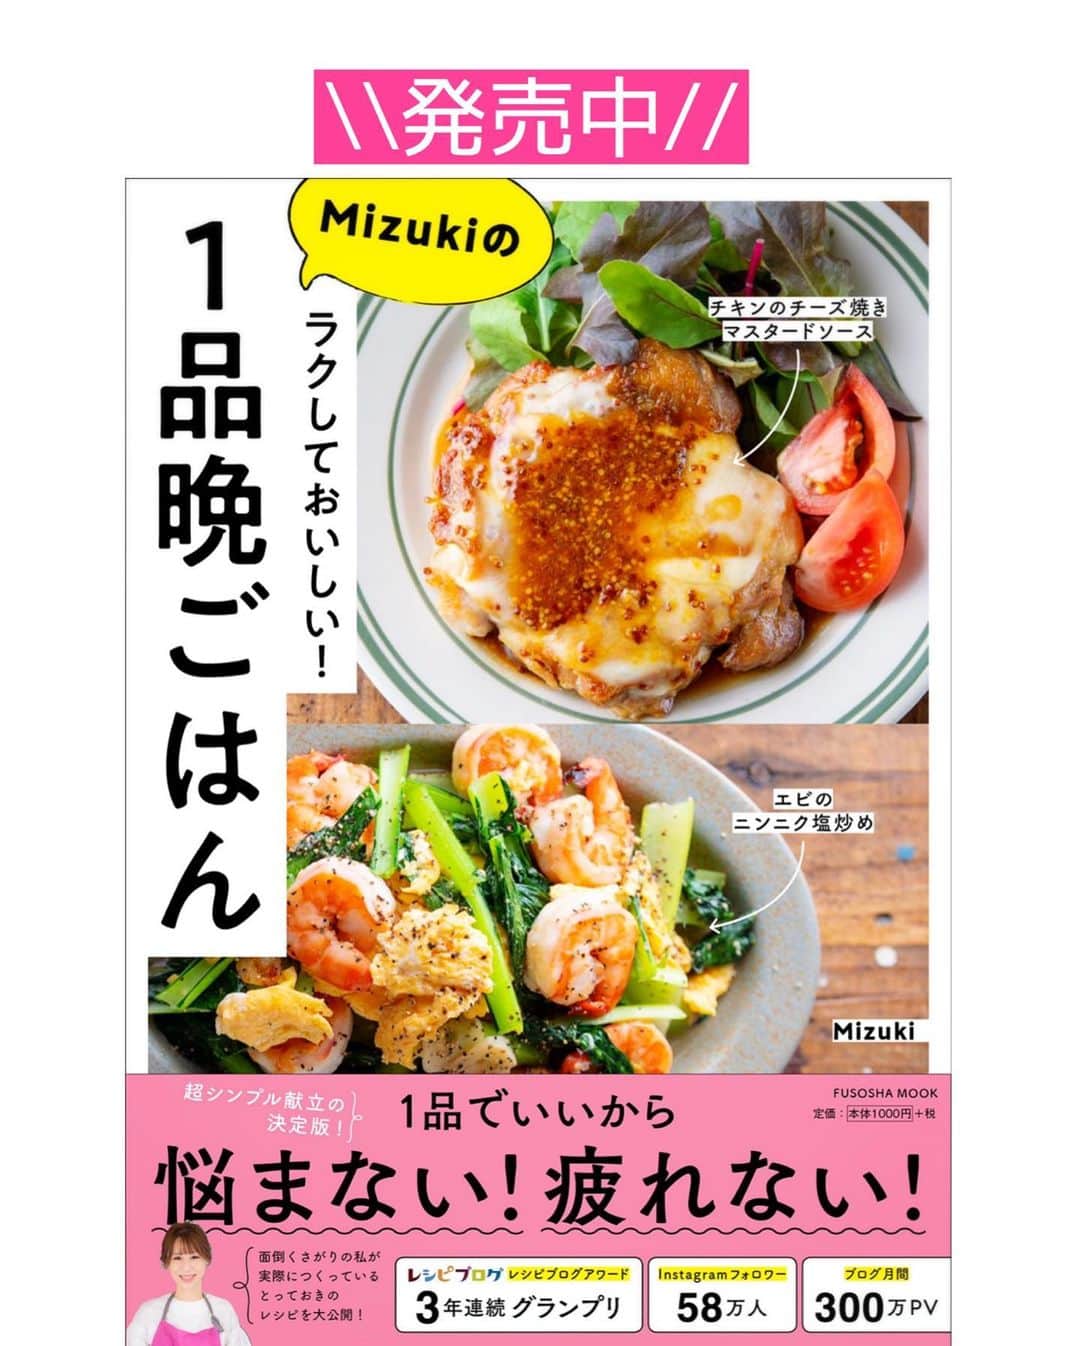 Mizuki【料理ブロガー・簡単レシピ】さんのインスタグラム写真 - (Mizuki【料理ブロガー・簡単レシピ】Instagram)「・﻿ 【#レシピ 】ーーーーーーーーーー﻿ 春雨は戻さない！白菜チャプチェ﻿ ーーーーーーーーーーーーーーーー﻿ ﻿ ﻿ ﻿ おはようございます(*^^*)﻿ ﻿ 今日ご紹介させていただくのは﻿ \ 白菜チャプチェ /﻿ 旬の白菜をたっぷり加えて﻿ ボリューム満点に仕上げました♡﻿ ﻿ 春雨は戻さないから超簡単！！﻿ さっと炒めて煮るだけで﻿ あっという間に作れますよ〜♩﻿ ﻿ とってもごはんに合うので﻿ よかったらお試し下さいね(*´艸`)﻿ ﻿ ﻿ ﻿ ＿＿＿＿＿＿＿＿＿＿＿＿＿＿＿＿＿＿＿＿﻿ 【2人分】﻿ 豚バラ薄切り肉...100g﻿ 白菜...1/8個(200g)﻿ 玉ねぎ...1/4個﻿ 人参...1/4本﻿ 春雨...40g﻿ ●水...200ml﻿ ●酒・醤油...各大1.5﻿ ●砂糖・オイスターソース...各大1﻿ ●にんにくチューブ...2cm﻿ ごま油...大1﻿ 塩こしょう...少々﻿ (好みで)白ごま...適量﻿ ﻿ 1.豚肉は3cm長さに切る。白菜は1cm幅に切る。玉ねぎは薄切りにする。人参は細切りにする。﻿ 2.フライパンにごま油を中火で熱して1を炒めて塩こしょうを振る。﻿ 3.豚肉の色が変わったら●と春雨を加え、混ぜながら4分程炒め煮する。仕上げにごまを振る。﻿ ￣￣￣￣￣￣￣￣￣￣￣￣￣￣￣￣￣￣￣￣﻿ ﻿ ﻿ ﻿ 《ポイント》﻿ ♦︎春雨は煮汁に浸かるようにして炒め煮して下さい♩﻿ ♦︎豚こまでも美味しく作れます♩﻿ ﻿ ﻿ ﻿ ﻿ ﻿ ﻿ \\お知らせです//﻿ ﻿ 【🔔まる得マガジン集中放送決定🔔】﻿ ￣￣￣￣￣￣￣￣￣￣￣￣￣￣￣￣￣￣﻿ NHK Eテレで放送された﻿ ''ホットケーキミックスで﻿ 絶品おやつ&意外なランチ''が﻿ テキストと共に大反響をいただいており﻿ 本当にありがとうございます😭‼️﻿ ﻿ それを受けまして﻿ 異例の集中再放送が決定❣️❣️﻿ 放送は《1月24日(日)午後3時20分〜》﻿ 8本分一挙に放送されます✨﻿ ﻿ ホットケーキミックスの魅力を﻿ 存分にお伝えさせていただきますので﻿ お時間が合えばご覧下さいませ☺️﻿ ガッチガチに緊張している私を﻿ どうぞ笑ってやって下さい(笑)﻿ (内心めっちゃ恥ずかしいです😂)﻿ ﻿ ￣￣￣￣￣￣￣￣￣￣￣￣￣￣￣￣﻿ ﻿ ﻿ ﻿ ﻿ ﻿ ﻿ 📕重版しました！📕﻿ ありがとうございます😭﻿ 【ラクしておいしい！#1品晩ごはん 】﻿ ￣￣￣￣￣￣￣￣￣￣￣￣￣￣￣￣￣﻿ 私たちだってヘトヘトな日がある•••﻿ 毎日何品も作っていられない•••﻿ もうごはんに悩みたくない😢﻿ そんな時、1品ごはんはいかがでしょう？﻿ というご提案です✨﻿ ﻿ 【1品ごはん】は﻿ 副菜いらずで全てがシンプル！﻿ ￣￣￣￣￣￣￣￣￣￣￣￣￣￣￣￣￣￣﻿ 一品つくるだけでいいから﻿ 献立を考えなくてよし！﻿ ￣￣￣￣￣￣￣￣￣￣￣￣￣￣￣￣￣￣﻿ 悩まない、疲れない、﻿ 気力や時間がなくてもなんとかなる！﻿ ￣￣￣￣￣￣￣￣￣￣￣￣￣￣￣￣￣￣﻿ そんな頼りになる﻿ 便利なお助けごはんです☺️💕﻿ (ハイライトに🔗貼っています✨)﻿ ￣￣￣￣￣￣￣￣￣￣￣￣￣￣￣￣￣﻿ ﻿ ﻿ ﻿ ﻿ ﻿ ⭐️発売中⭐️﻿ ＿＿＿＿＿＿＿＿＿＿＿＿＿＿＿＿＿＿﻿ しんどくない献立、考えました♩﻿ \15分でいただきます/﻿ 📕Mizukiの2品献立 📕﻿ ﻿ 和食をもっとカジュアルに♩﻿ \毎日のごはんがラクになる/﻿ 📘#Mizukiの今どき和食 📘﻿ ﻿ ホケミレシピの決定版♩﻿ \はじめてでも失敗しない/﻿ 📙ホットケーキミックスのお菓子 📙﻿ ﻿ NHKまる得マガジンテキスト☆﻿ ホットケーキミックスで﻿ 📗絶品おやつ&意外なランチ📗﻿ ￣￣￣￣￣￣￣￣￣￣￣￣￣￣￣￣￣￣﻿ ﻿ ﻿ ﻿ ＿＿＿＿＿＿＿＿＿＿＿＿＿＿＿＿＿＿﻿ レシピを作って下さった際や﻿ レシピ本についてのご投稿には﻿ タグ付け( @mizuki_31cafe )して﻿ お知らせいただけると嬉しいです😊💕﻿ ￣￣￣￣￣￣￣￣￣￣￣￣￣￣￣￣￣￣﻿ ﻿ ﻿ ﻿ ﻿ #白菜#チャプチェ#春雨#豚肉#フライパン#Mizuki#簡単レシピ#時短レシピ#節約レシピ#料理#フーディーテーブル#マカロニメイト#おうちごはん#デリスタグラマー#料理好きな人と繋がりたい#おうちごはんlover#写真好きな人と繋がりたい#foodpic#cooking#recipe#lin_stagrammer#foodporn#yummy#f52grams#白菜チャプチェm」1月23日 8時44分 - mizuki_31cafe